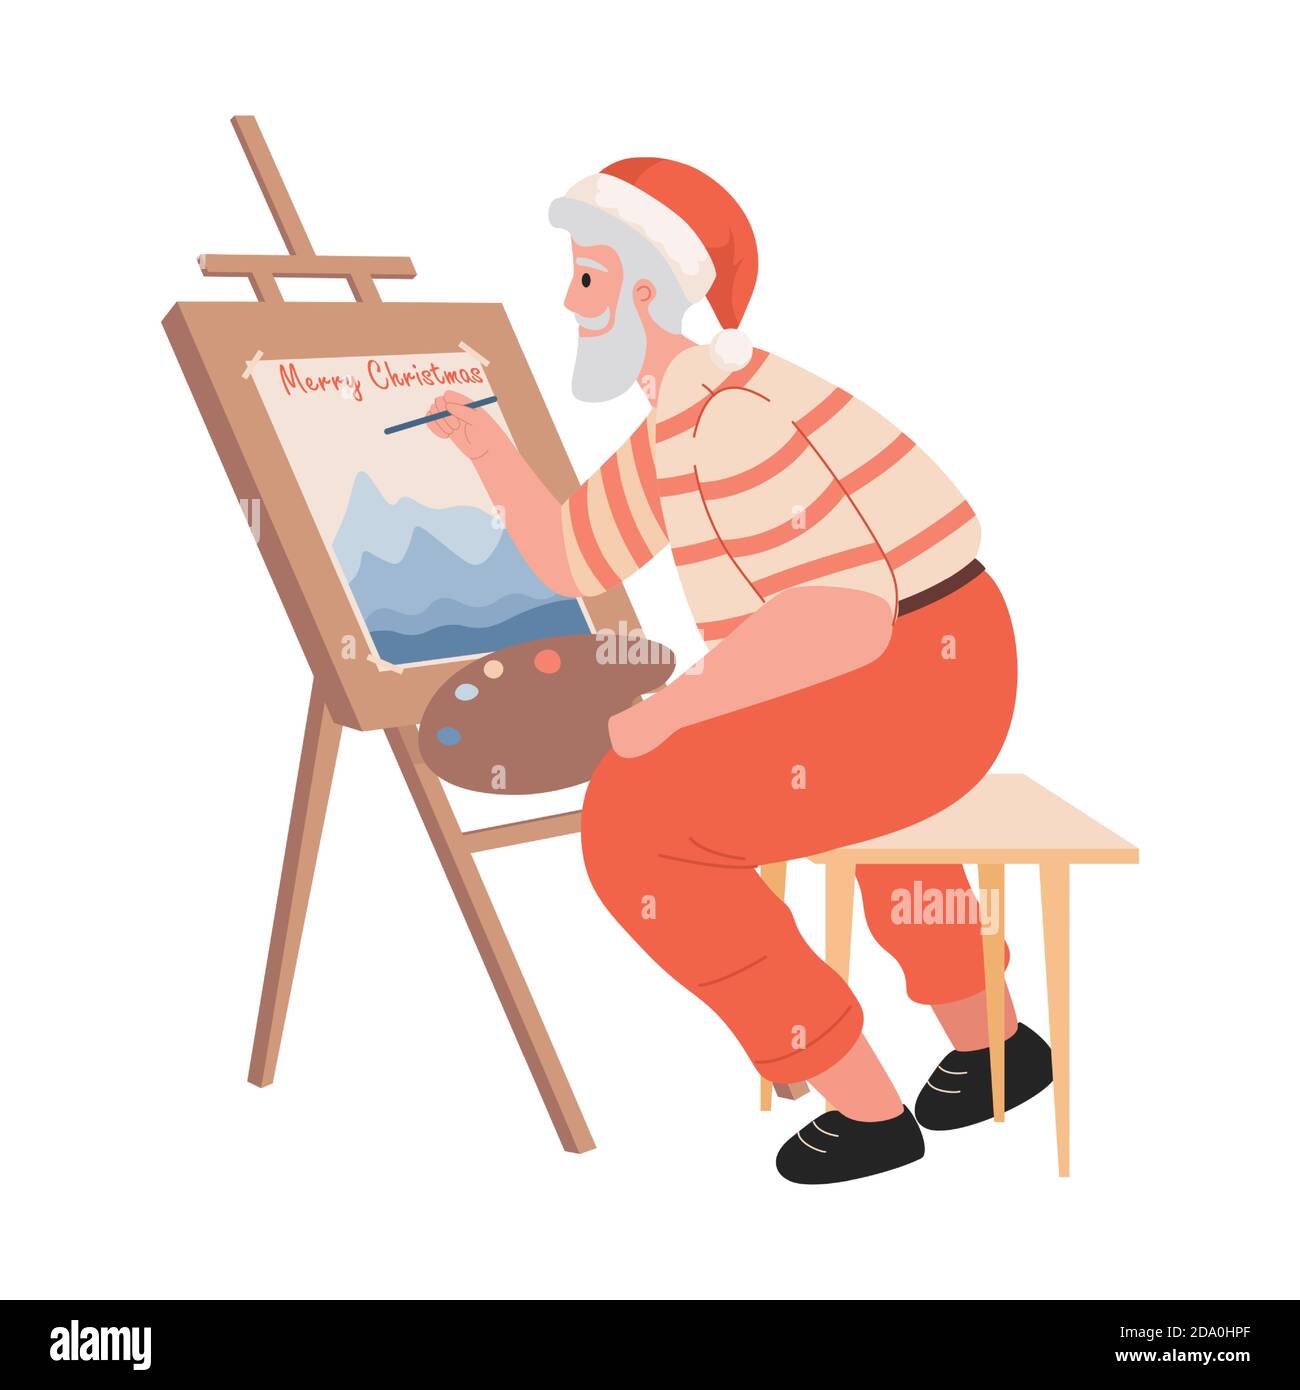 Santa Claus dessin bonne année et Joyeux Noël carte de voeux sur chevalet.  Le Père Noël peint une image vectorielle plate illustration isolée sur fond  blanc. Concept des fêtes de Noël Image